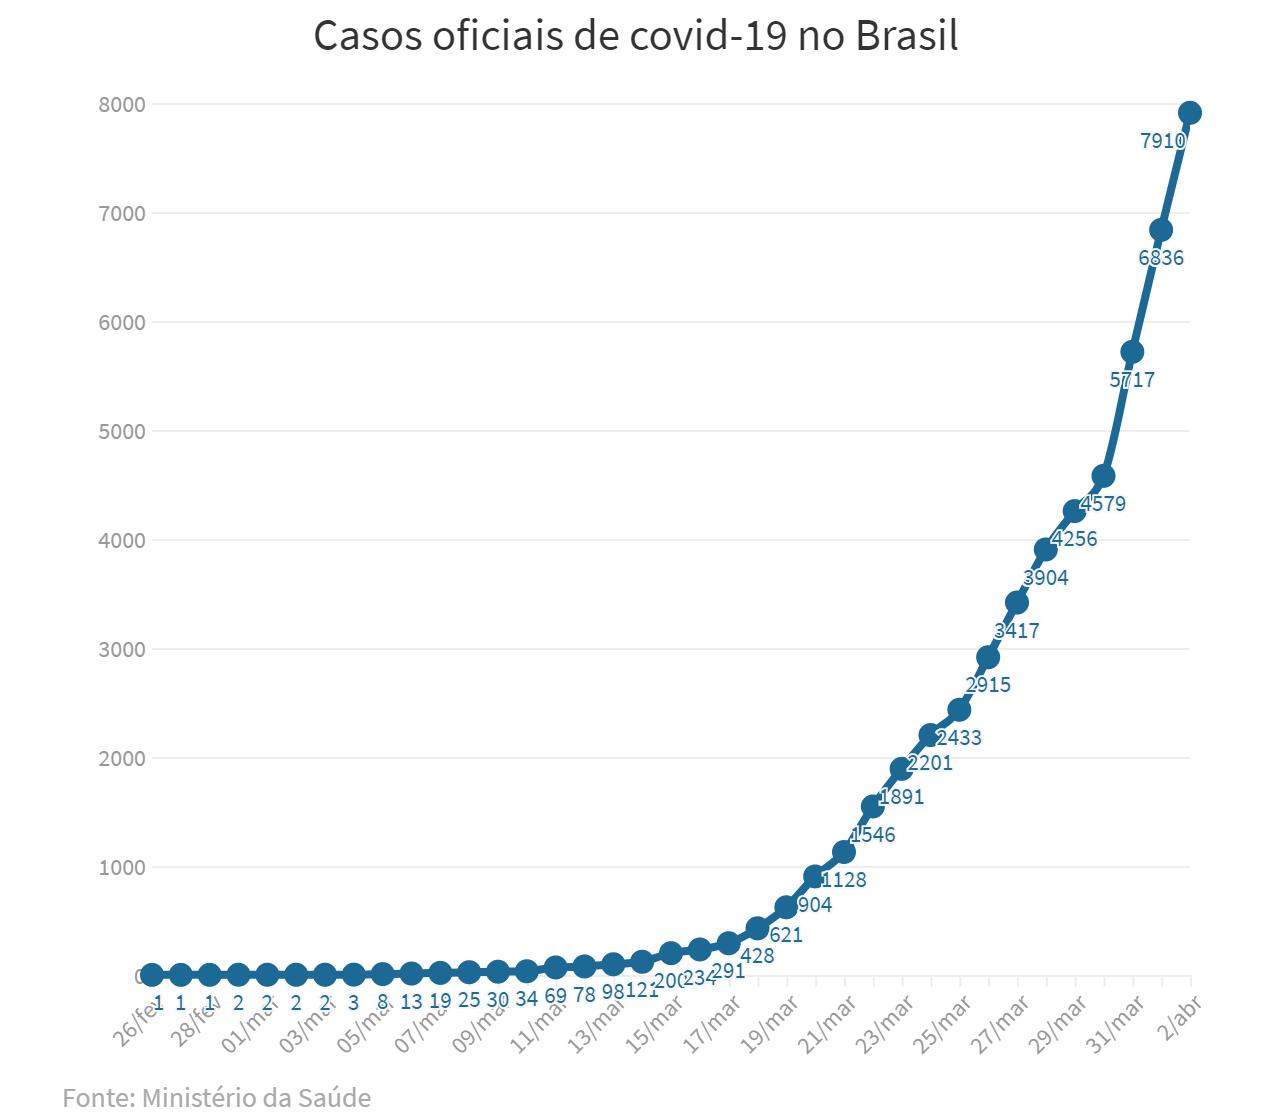 巴西新冠肺炎确诊病例达7910例 逾25万份重病患者的样本亟待检测